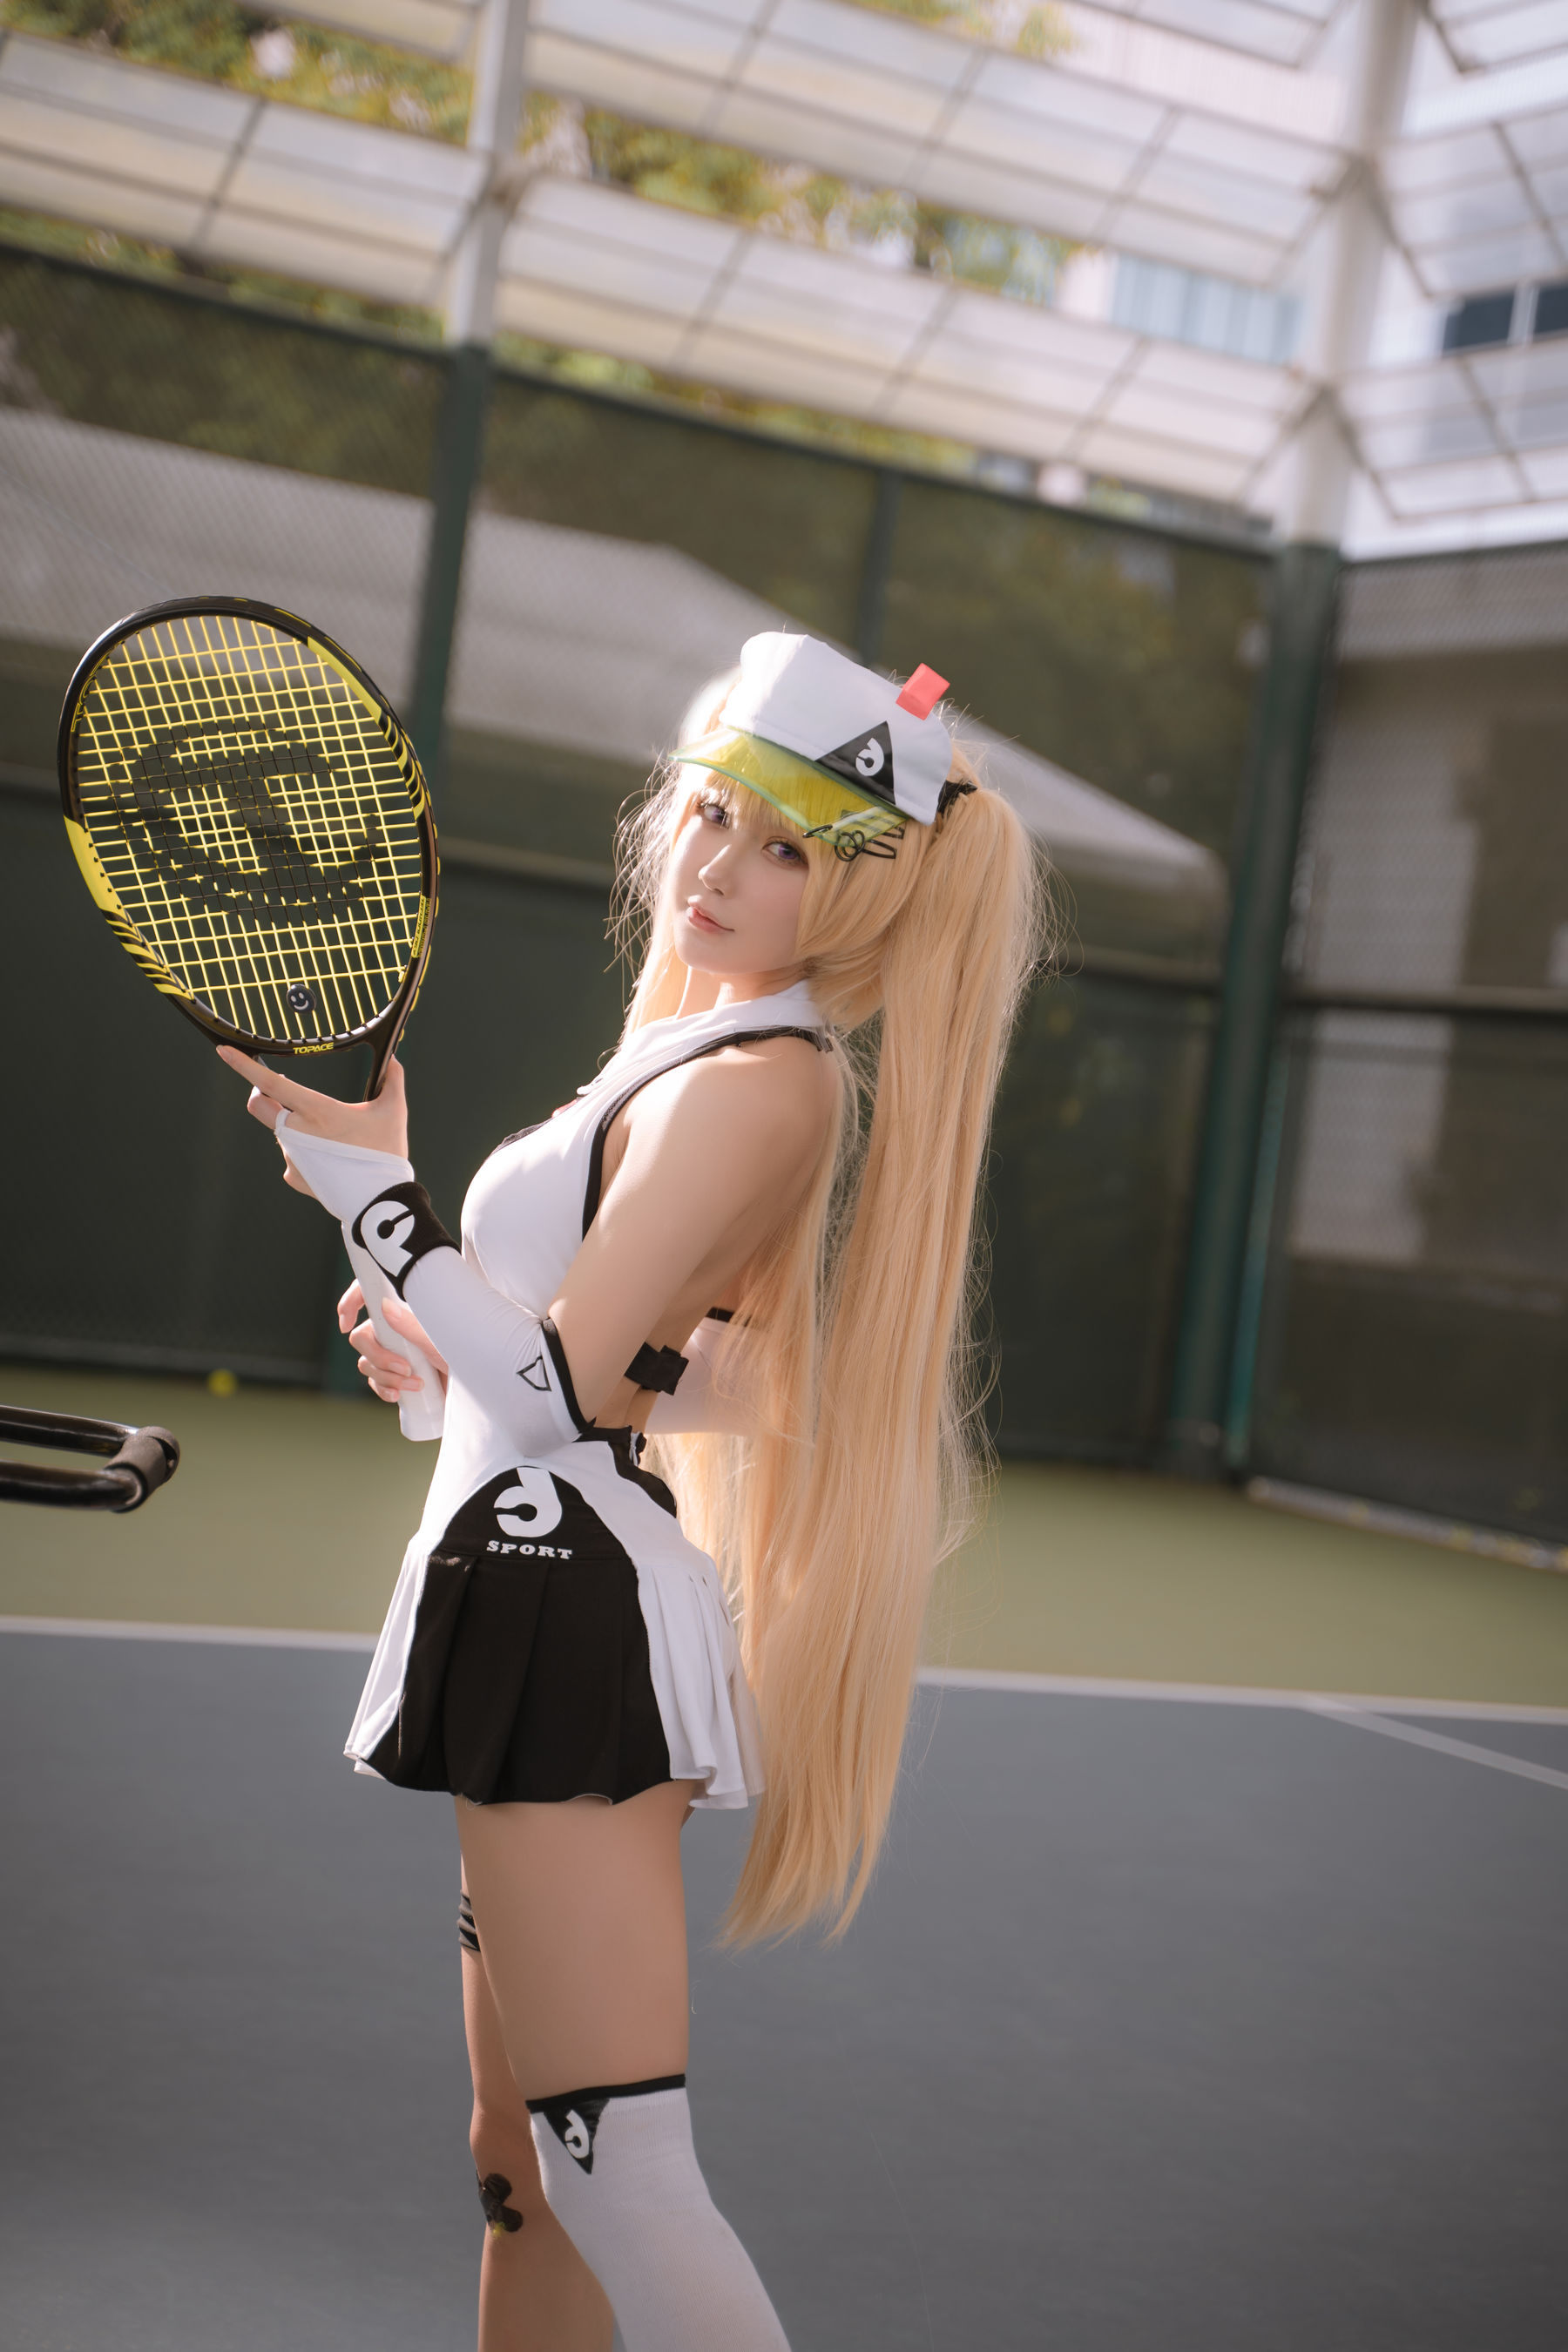 [COSPLAY]阿包也是兔娘 – 贝奇网球服